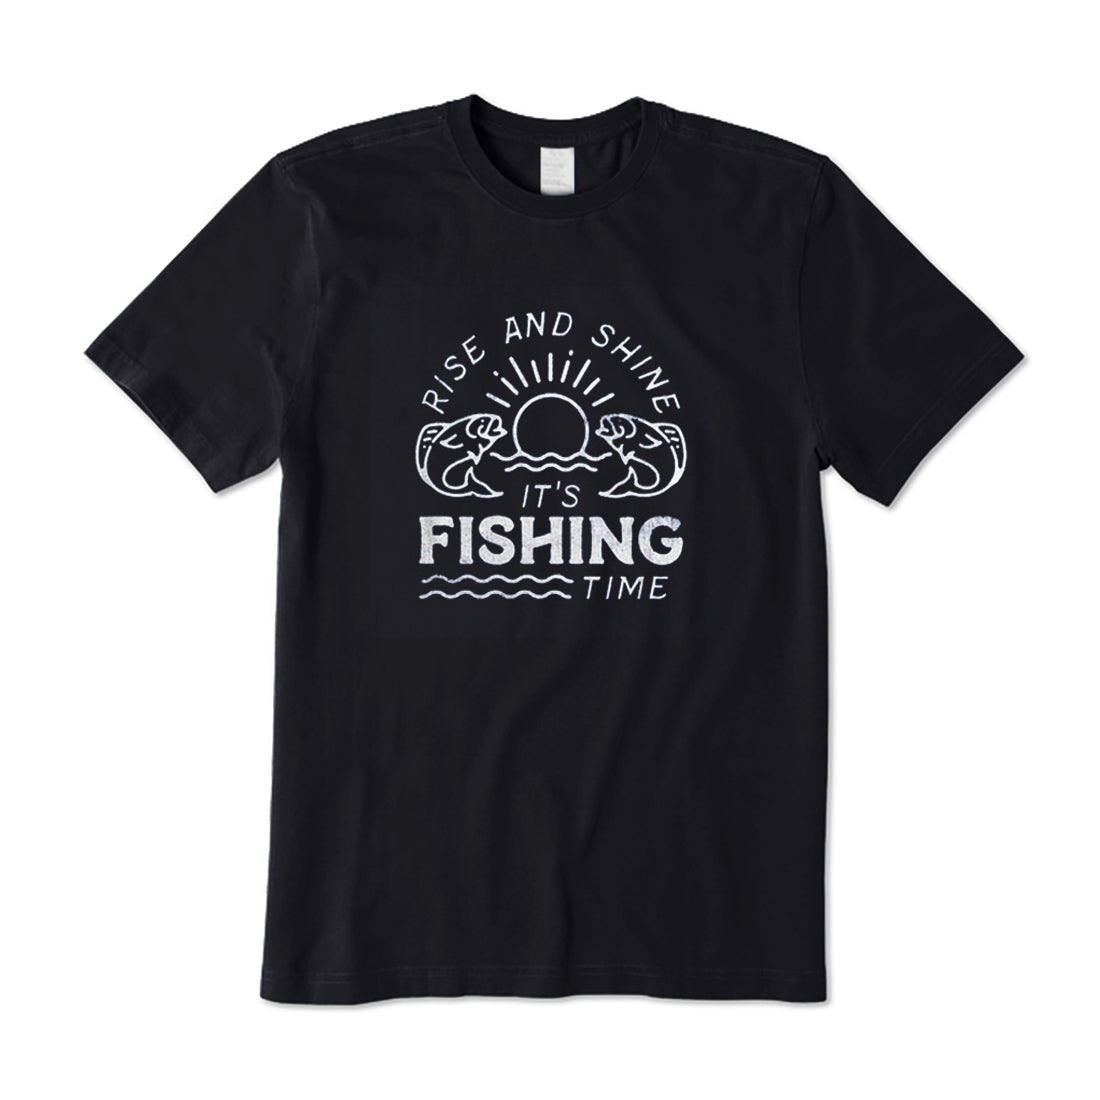 It's Fishing Time T-Shirt